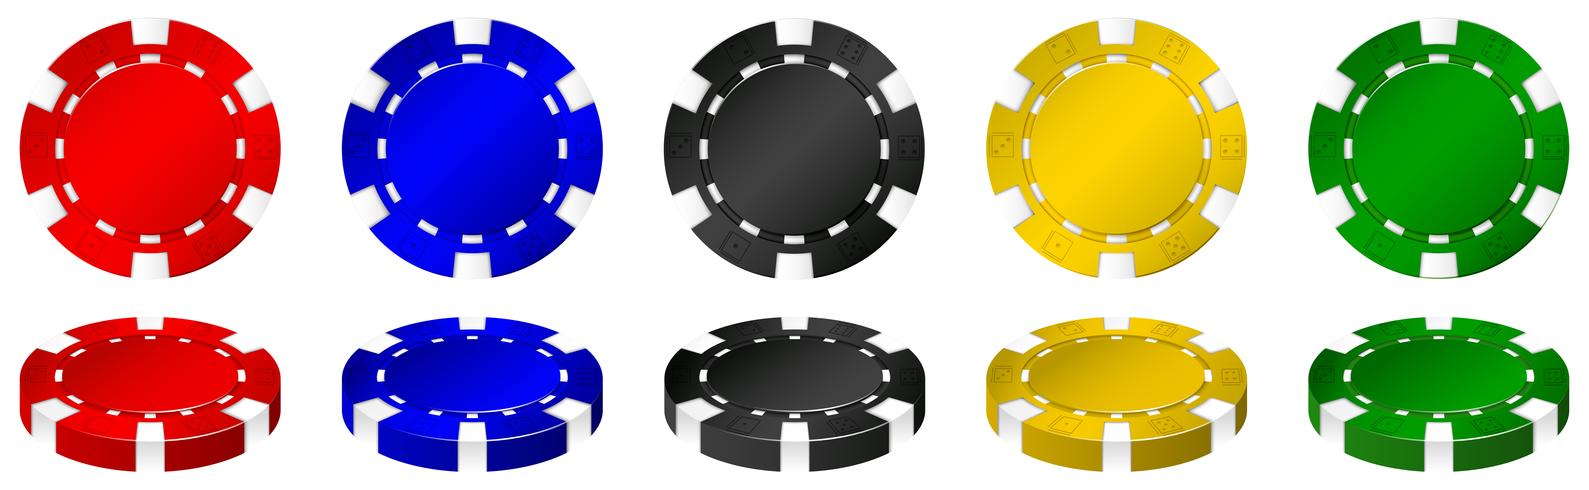 Casino chips i många färger vektor